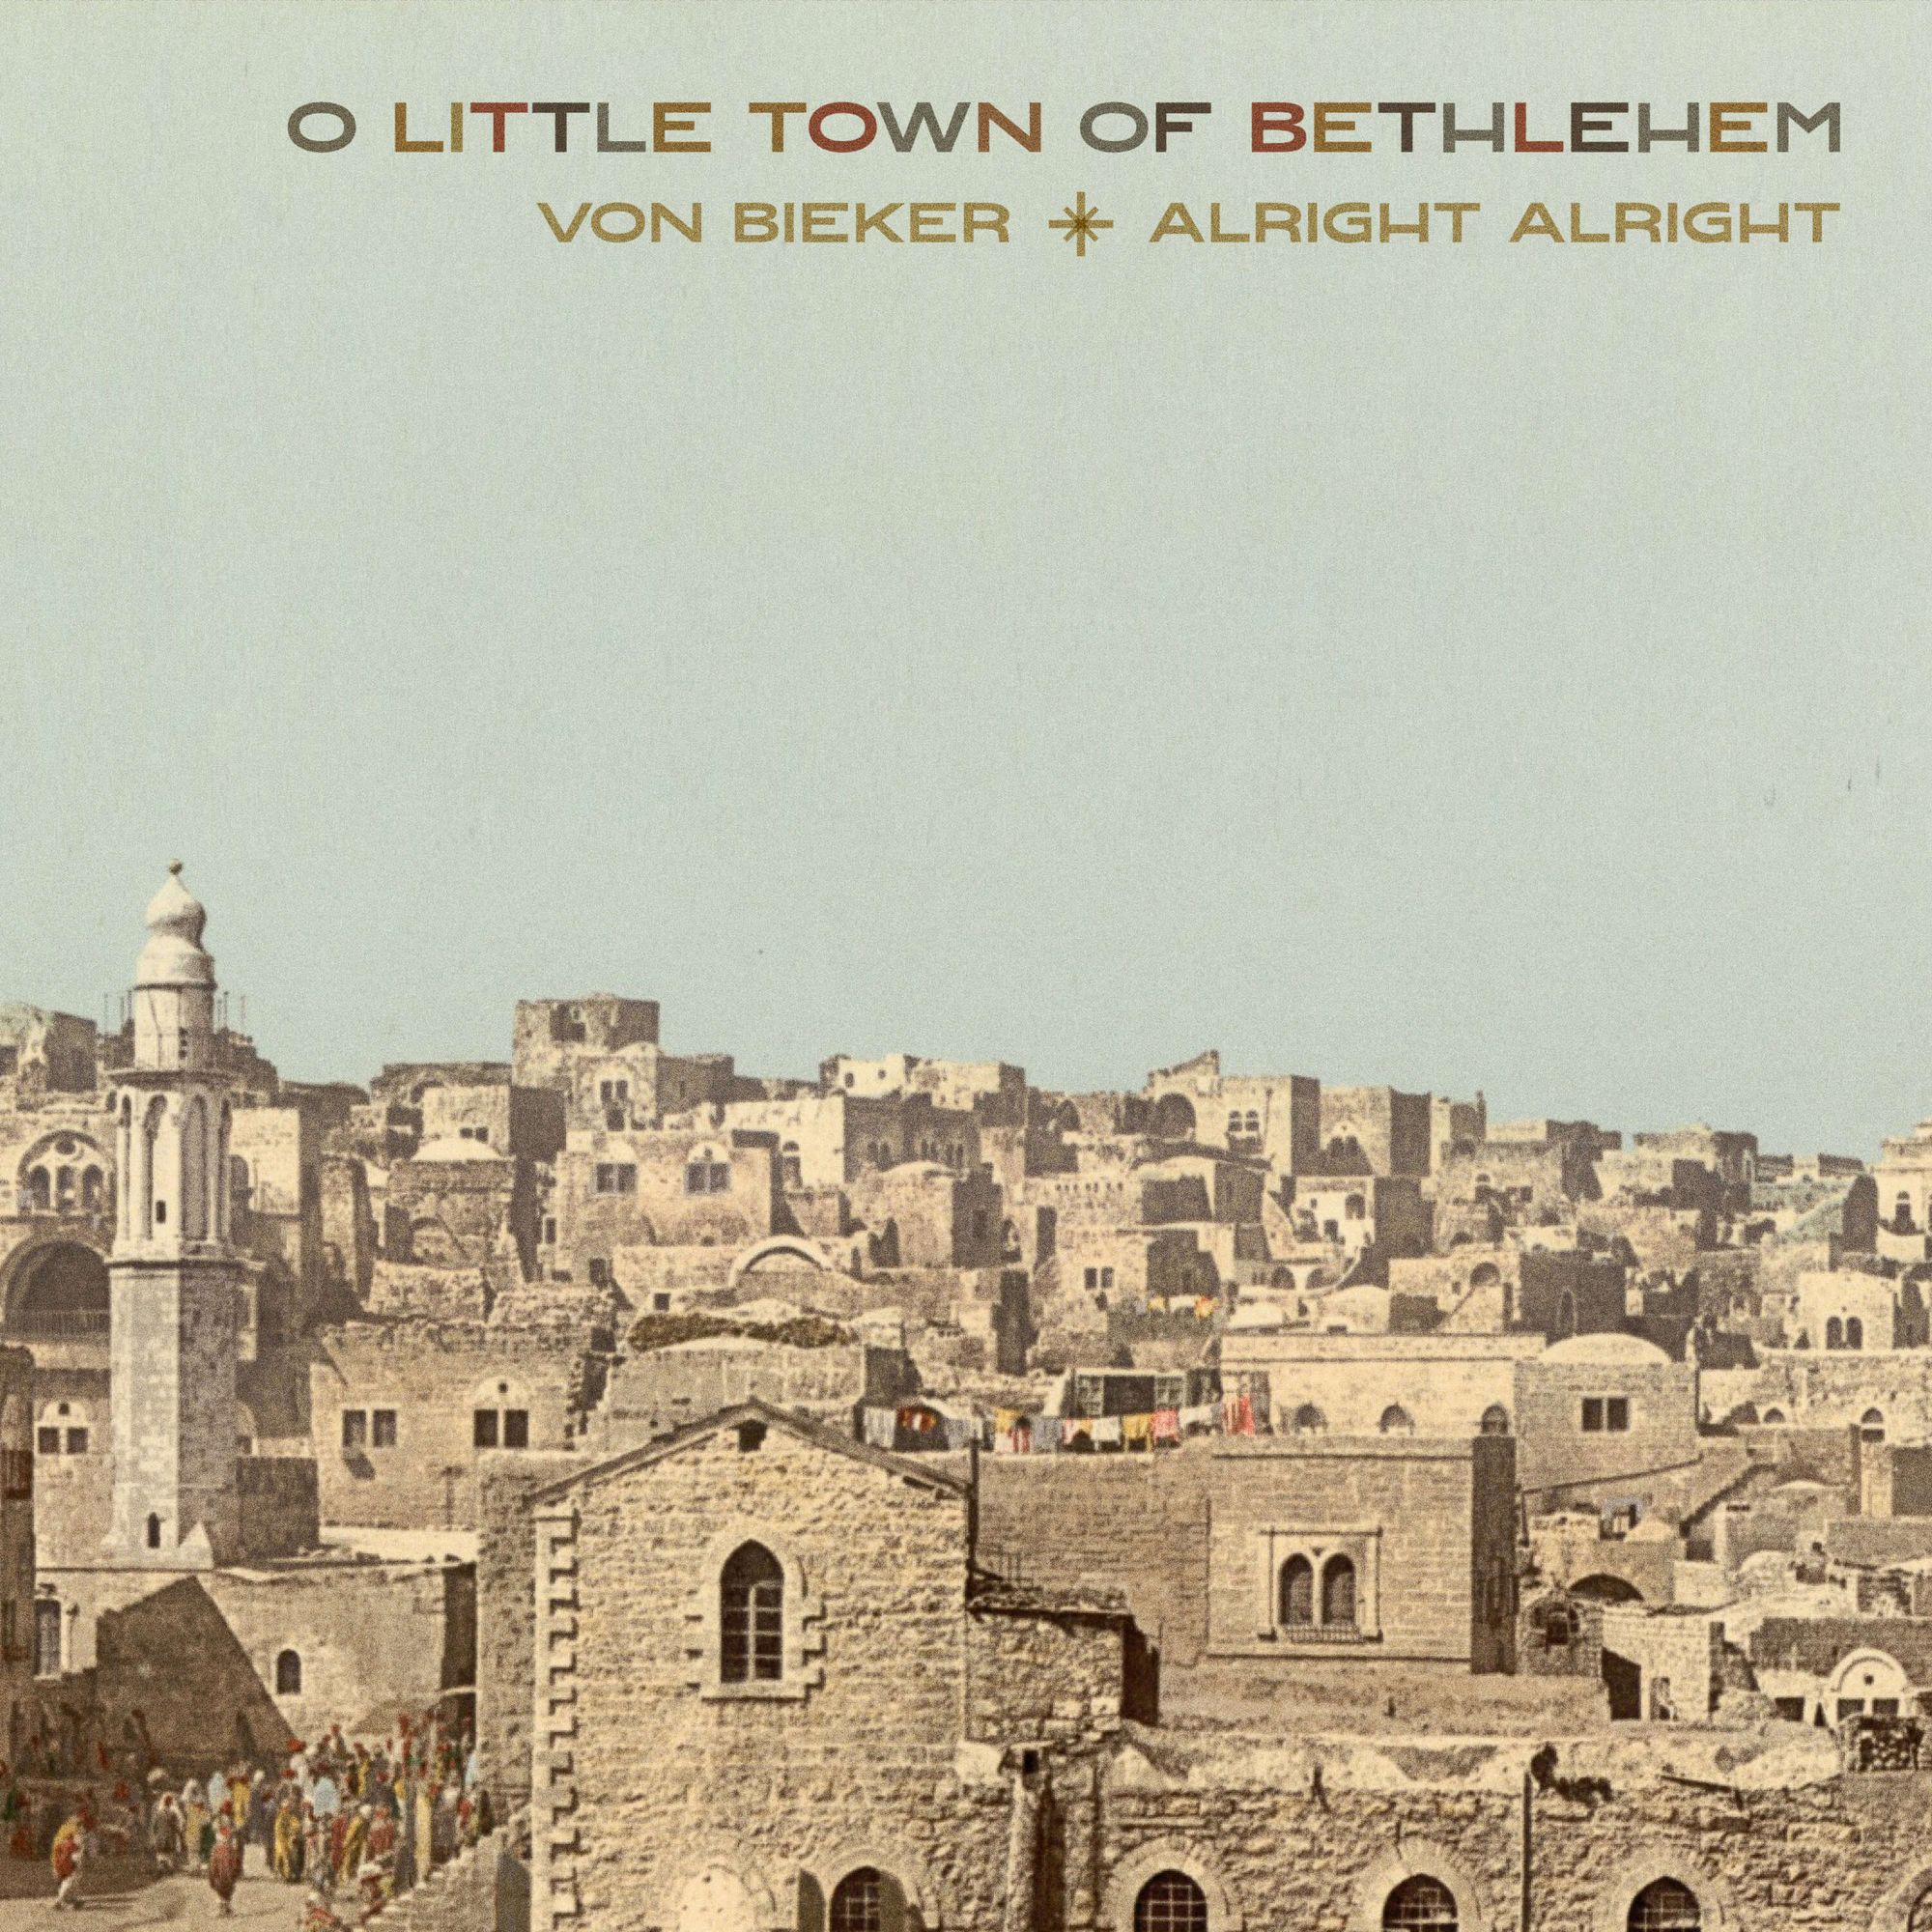 O Little Town of Bethlehem 🎵